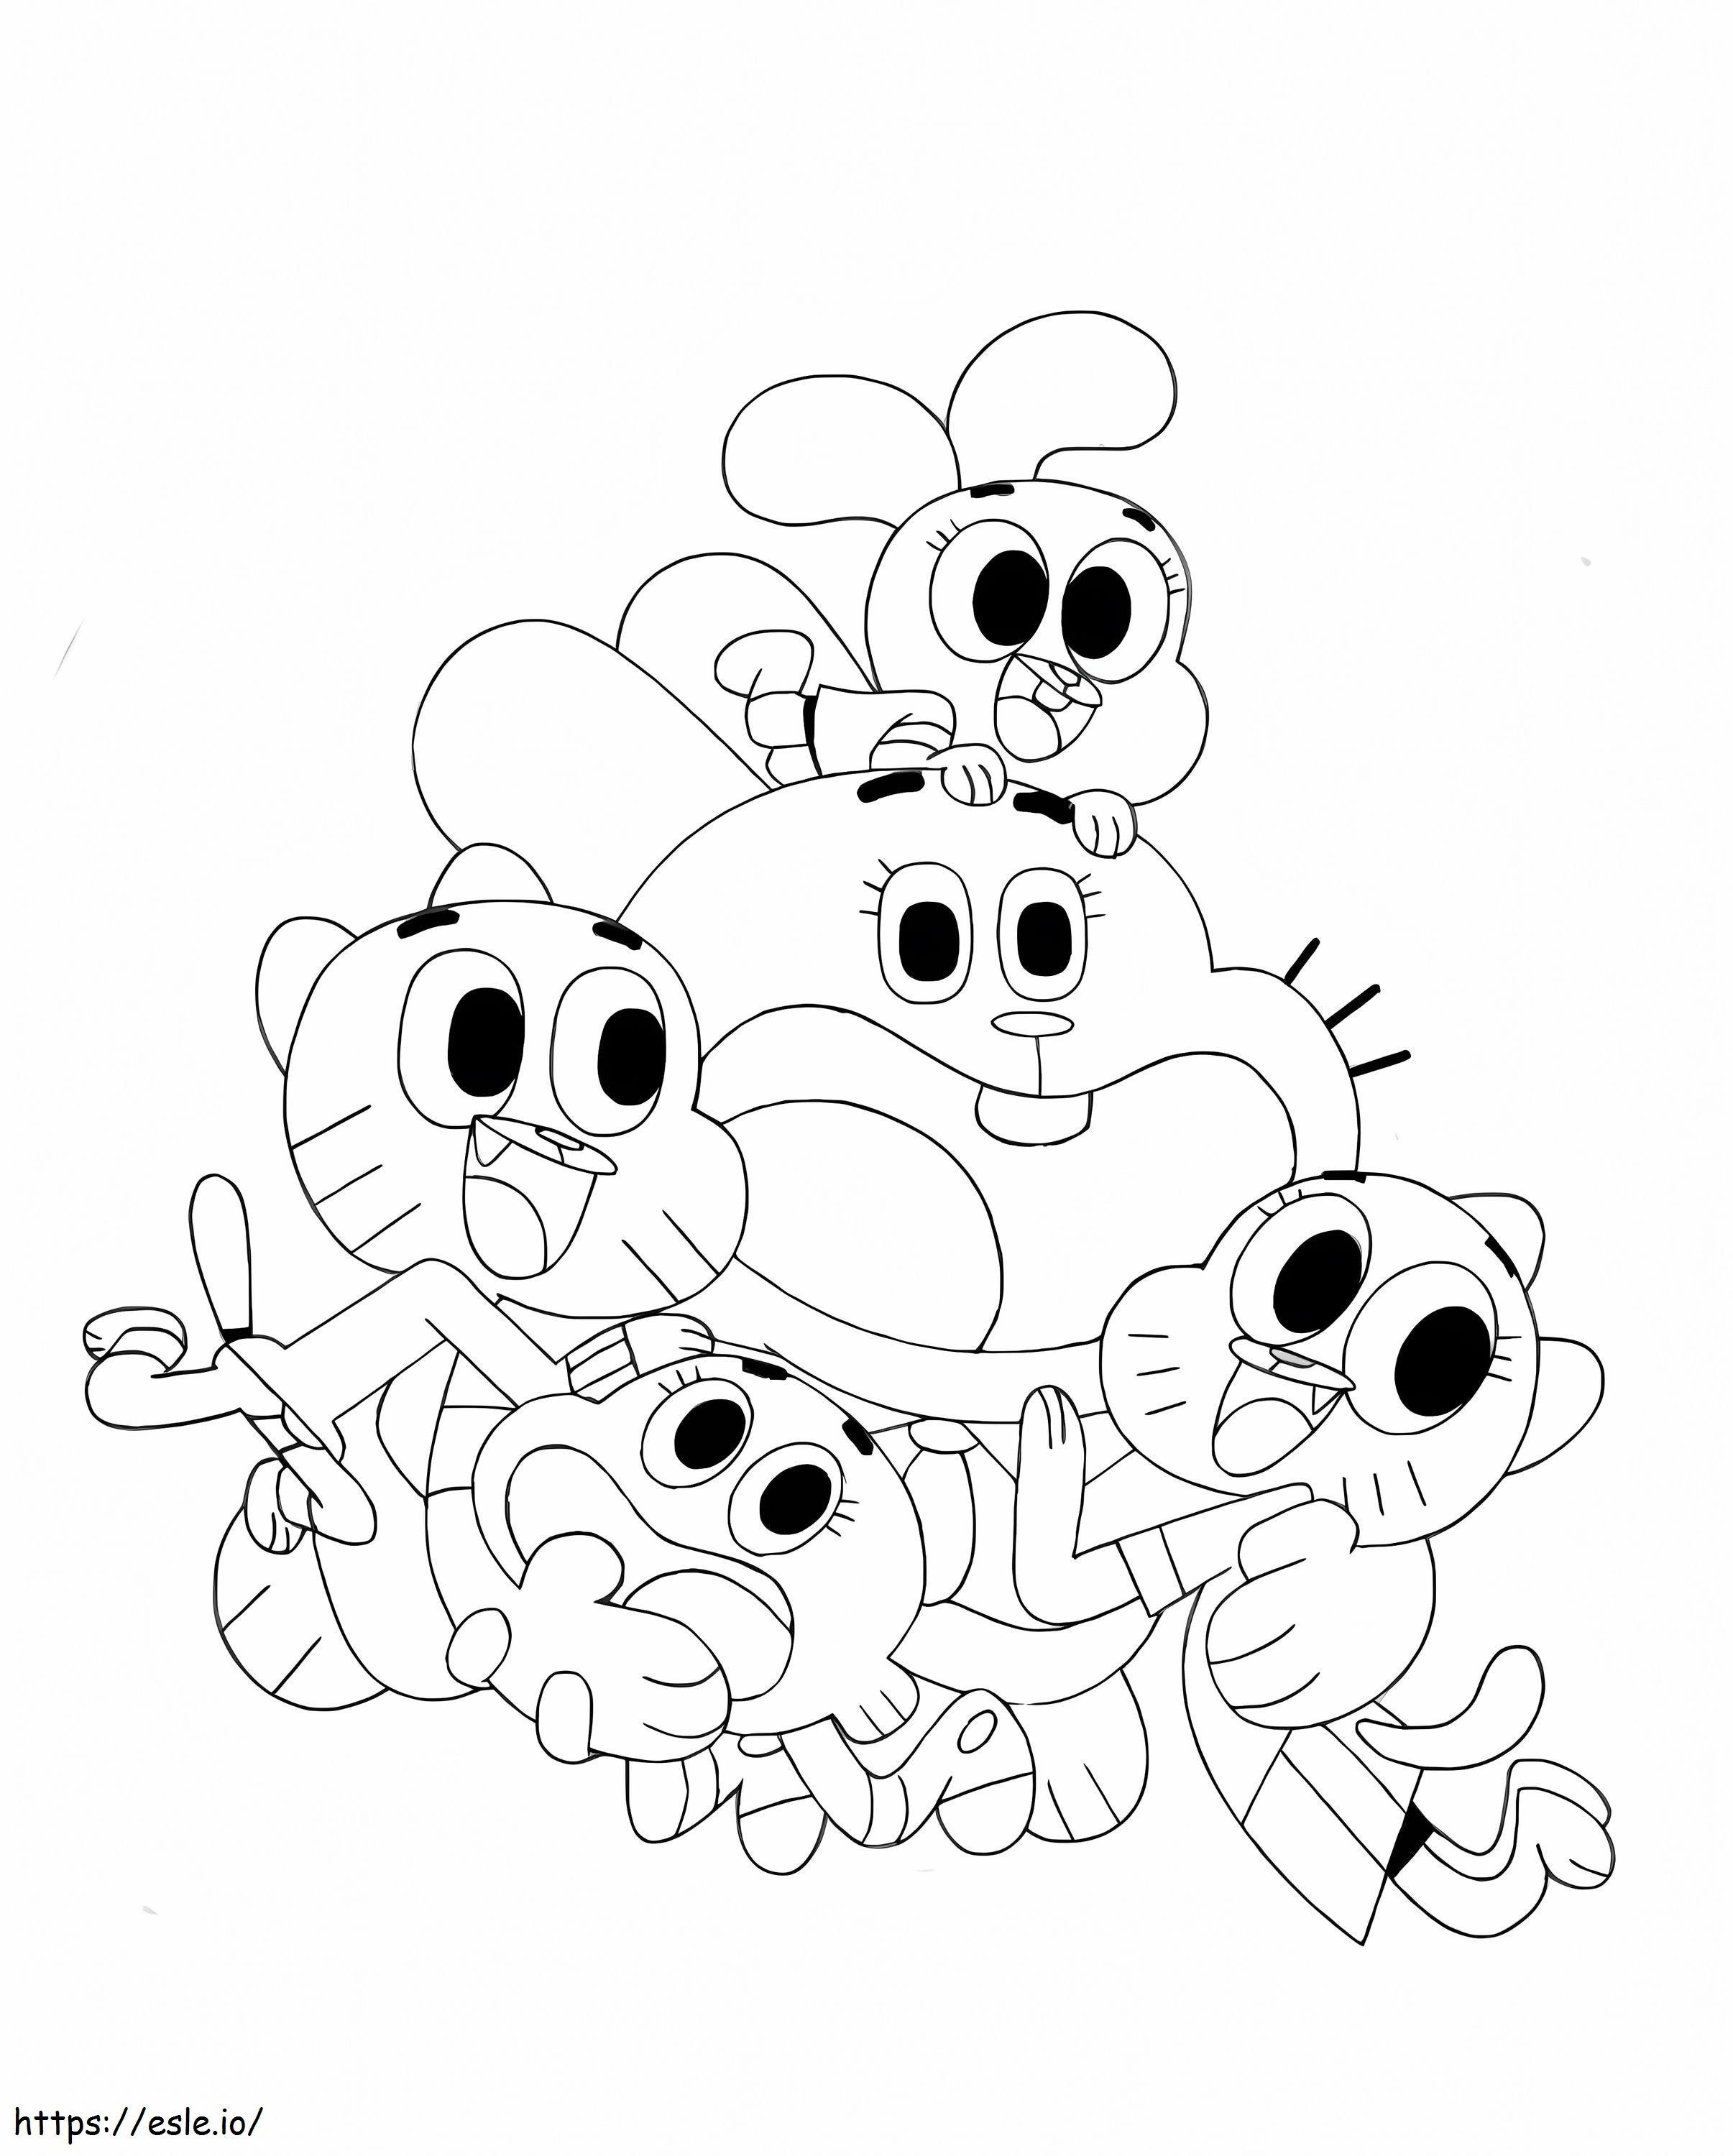 Darwin și o familie fericită de colorat